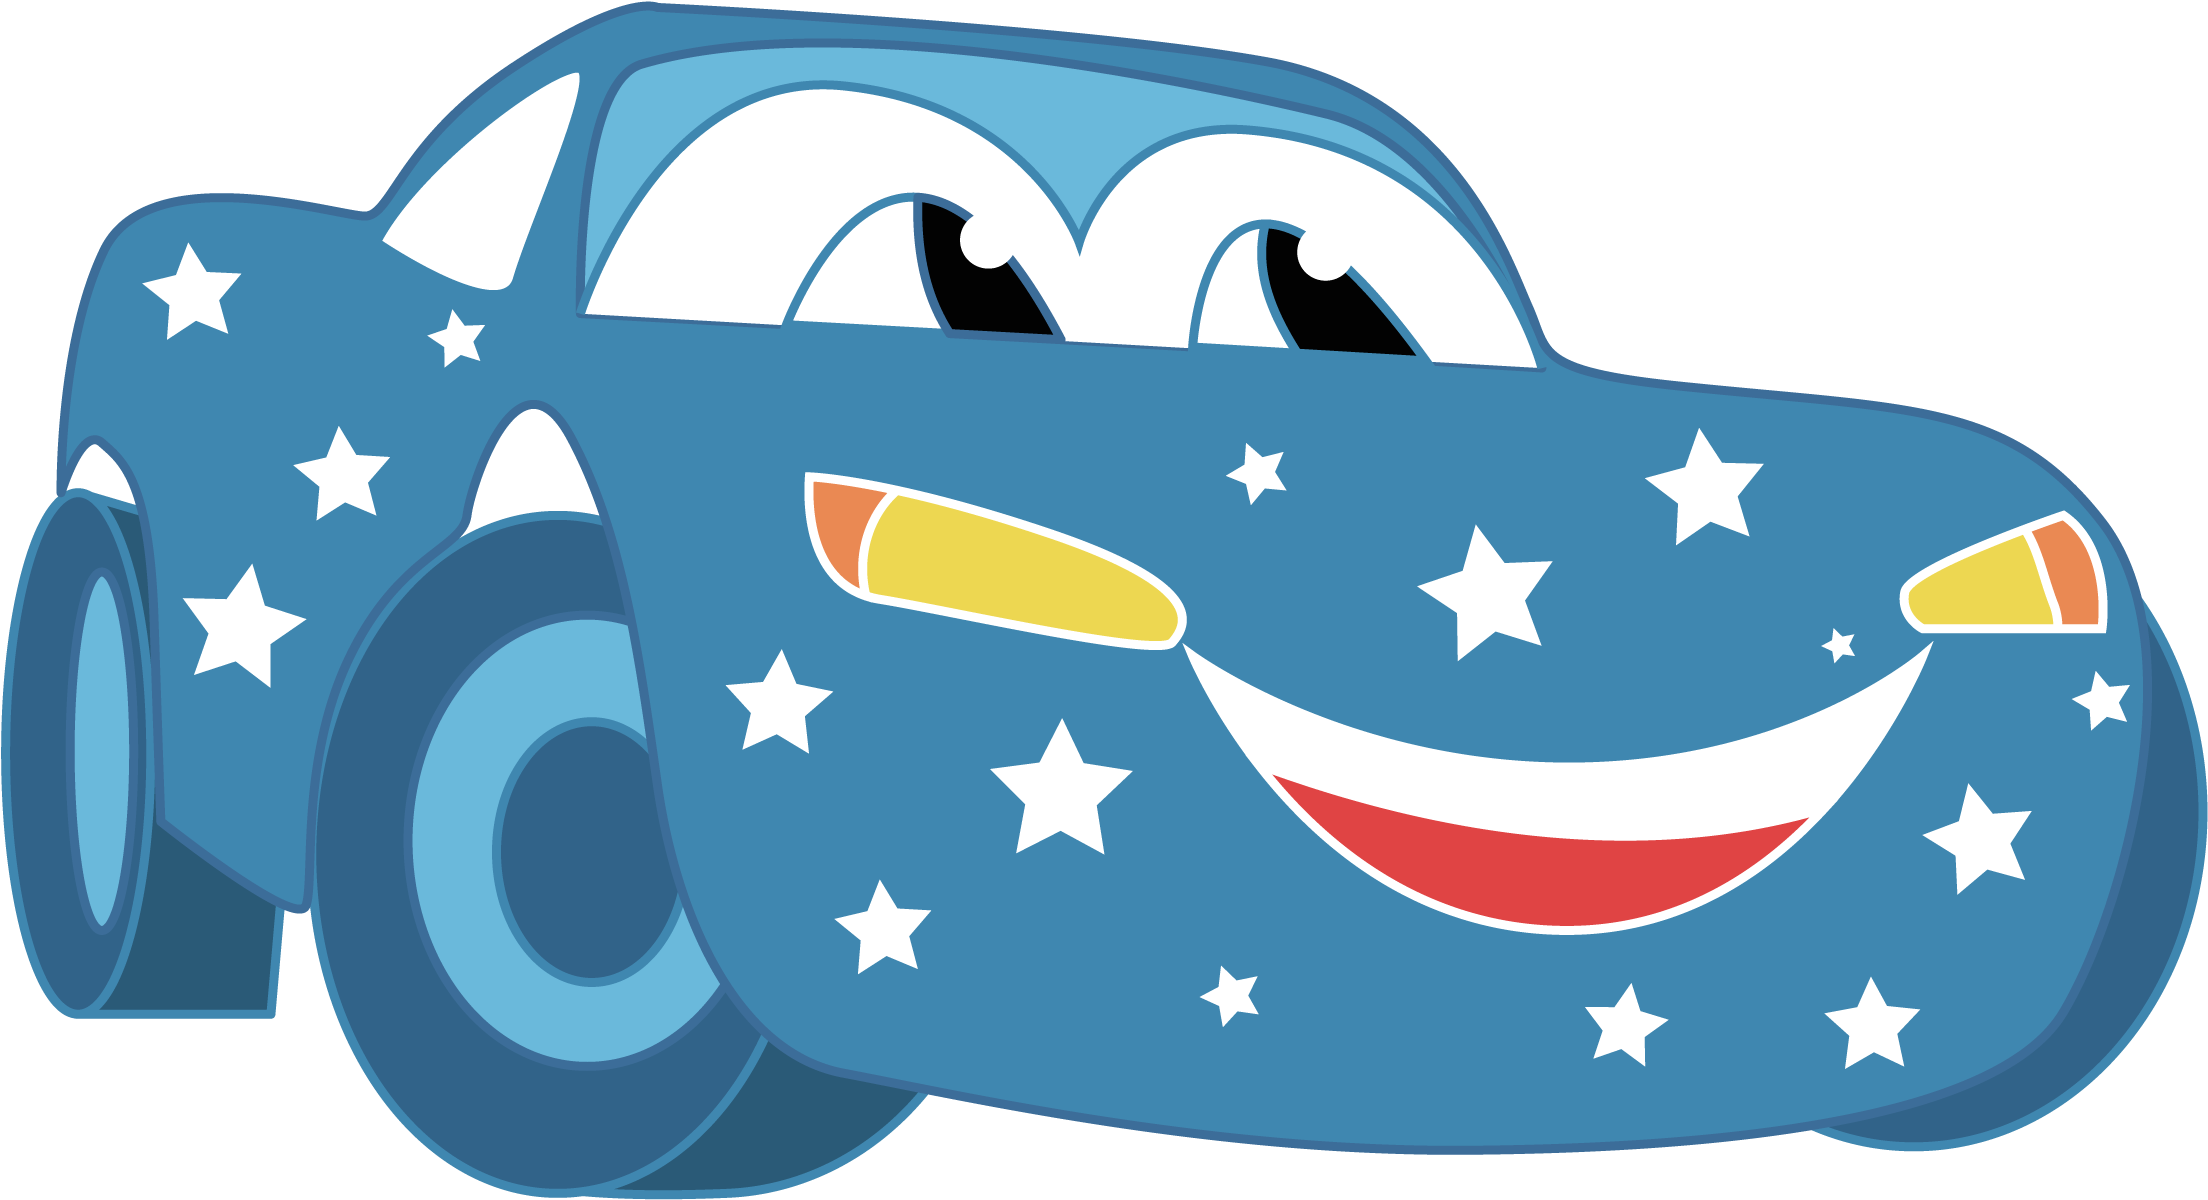 Lightning Mcqueen Mater Cartoon Clip Art - Cars Cartoon Clipart -  (2250x1256) Png Clipart Download